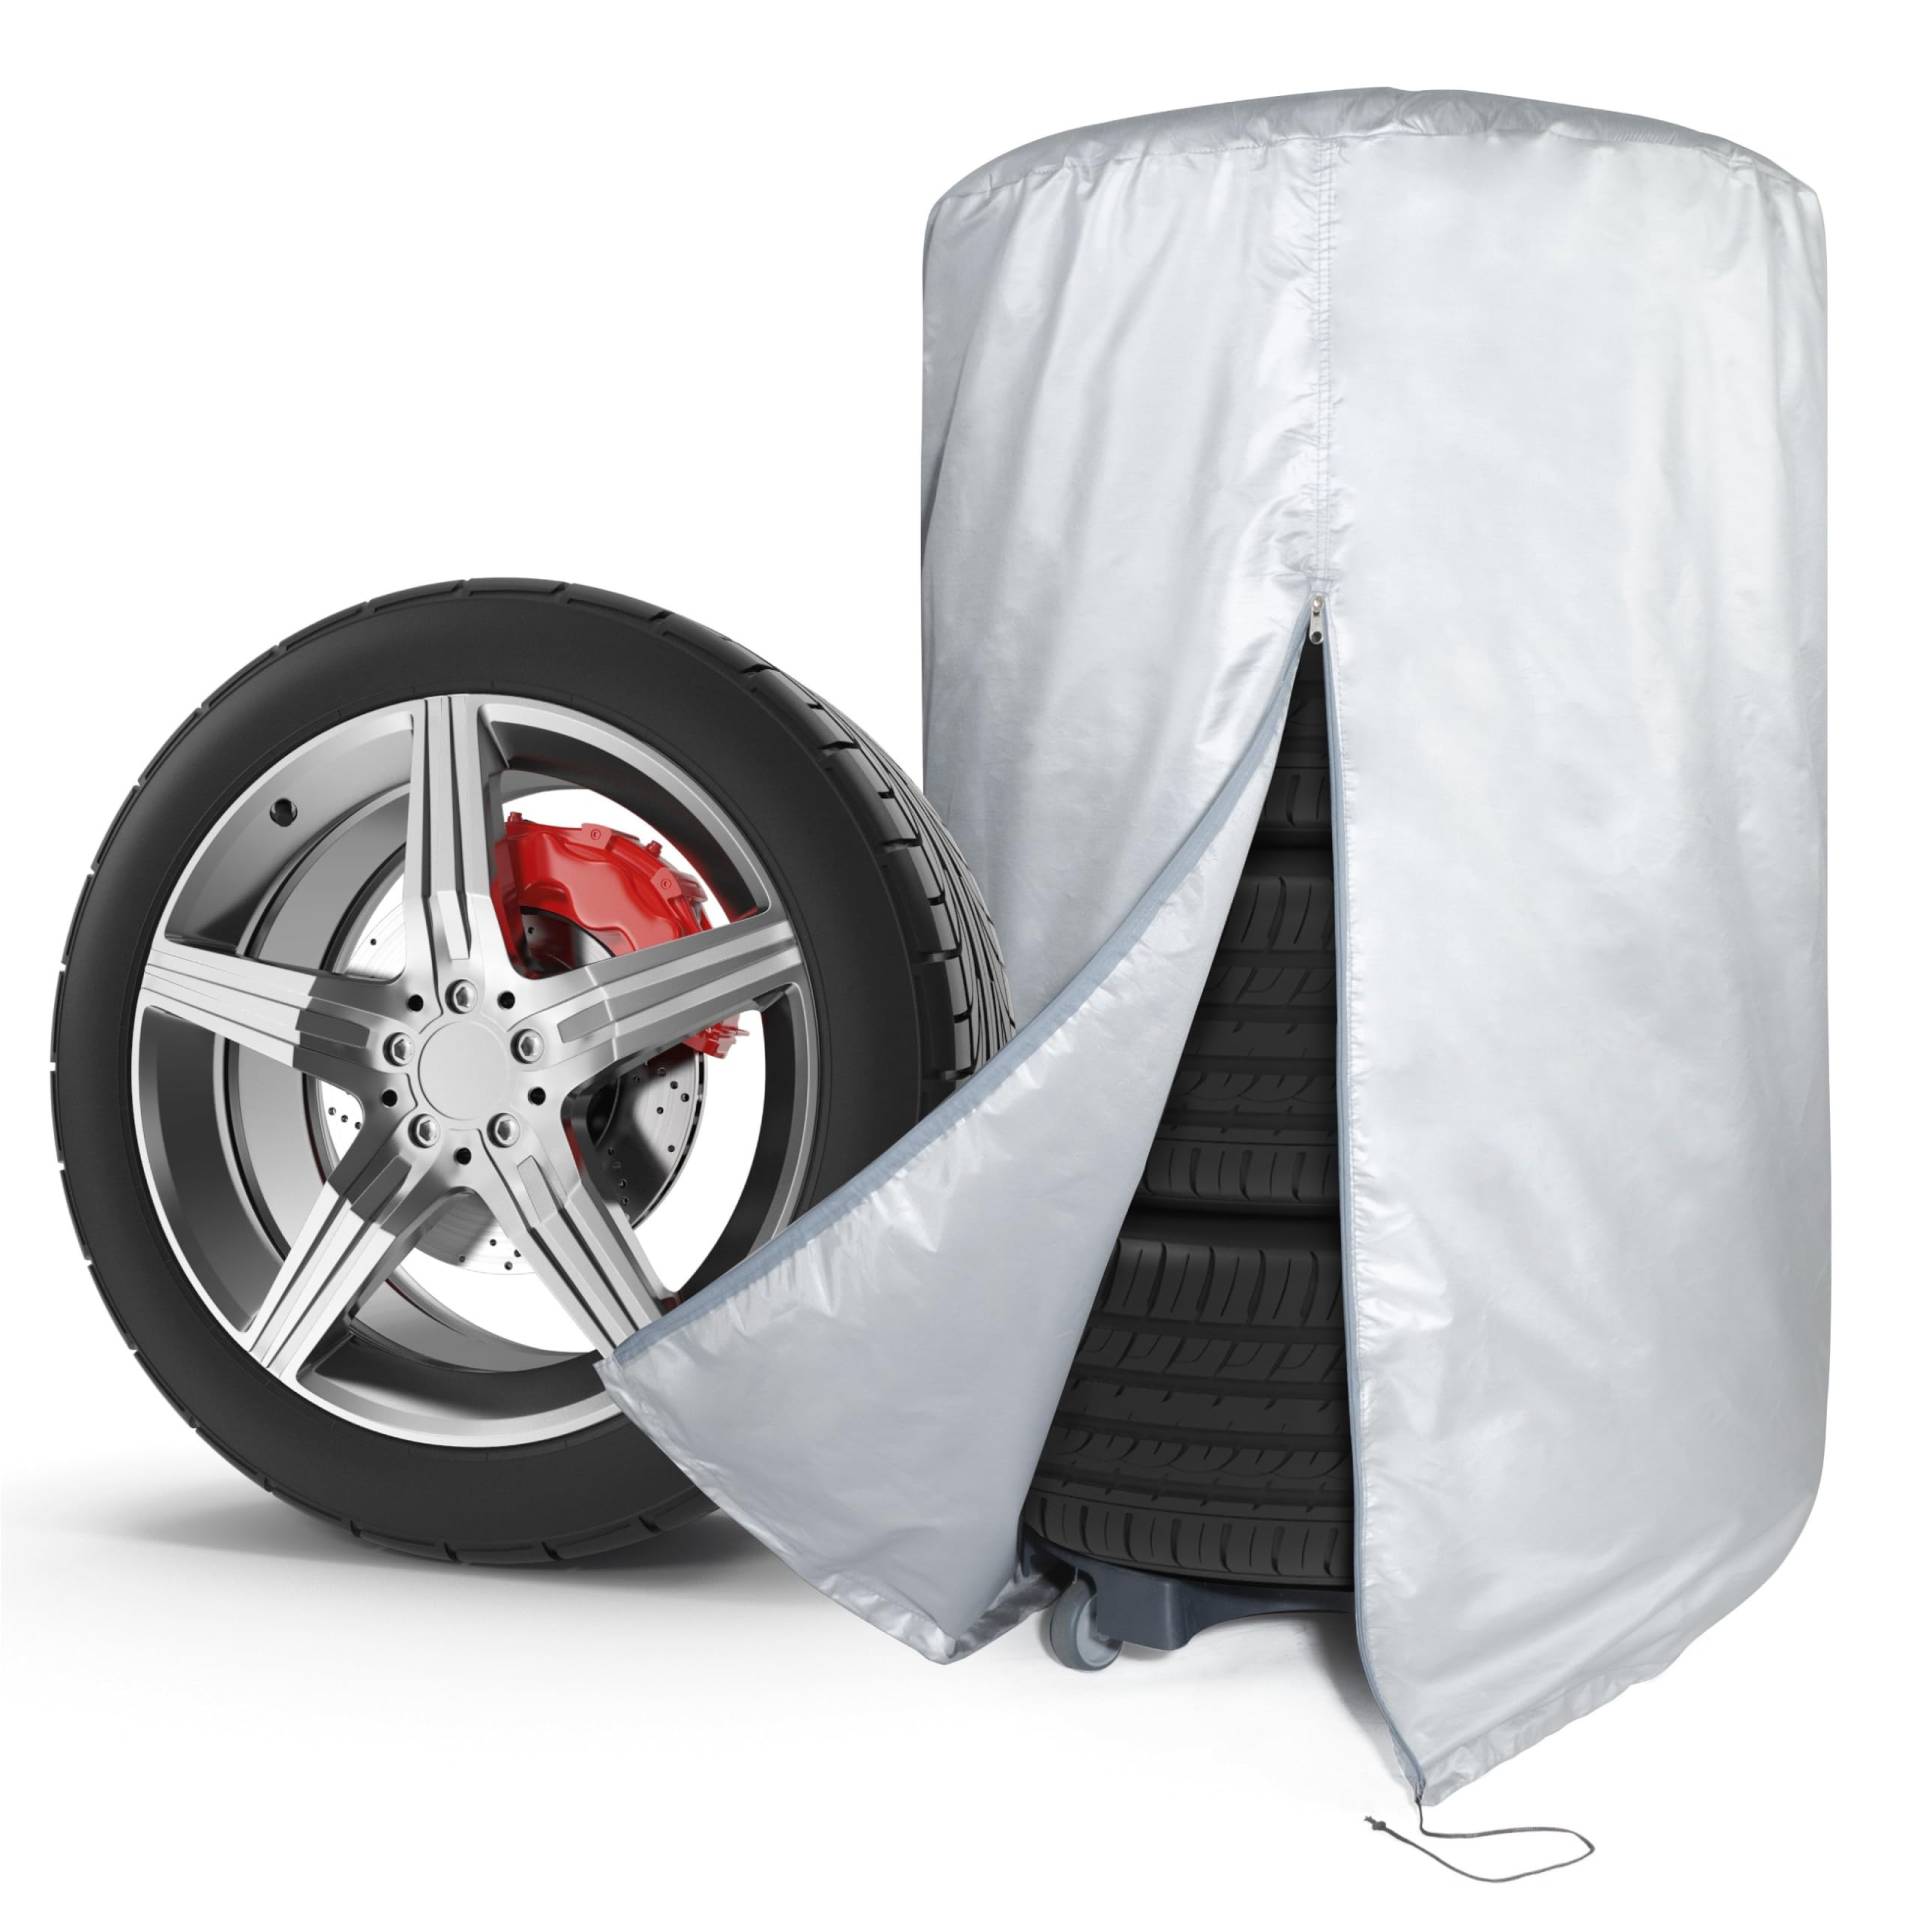 WALSER Auto Reifentasche, Autoreifen Aufbewahrung für 4 Reifen, Autoreifen Hülle, Autoreifen Tasche, Reifen Aufbewahrung, Reifen Hülle, Reifen Sack für Reifen Lagerung, Reifen Tasche silber 19-20 Zoll von Walser